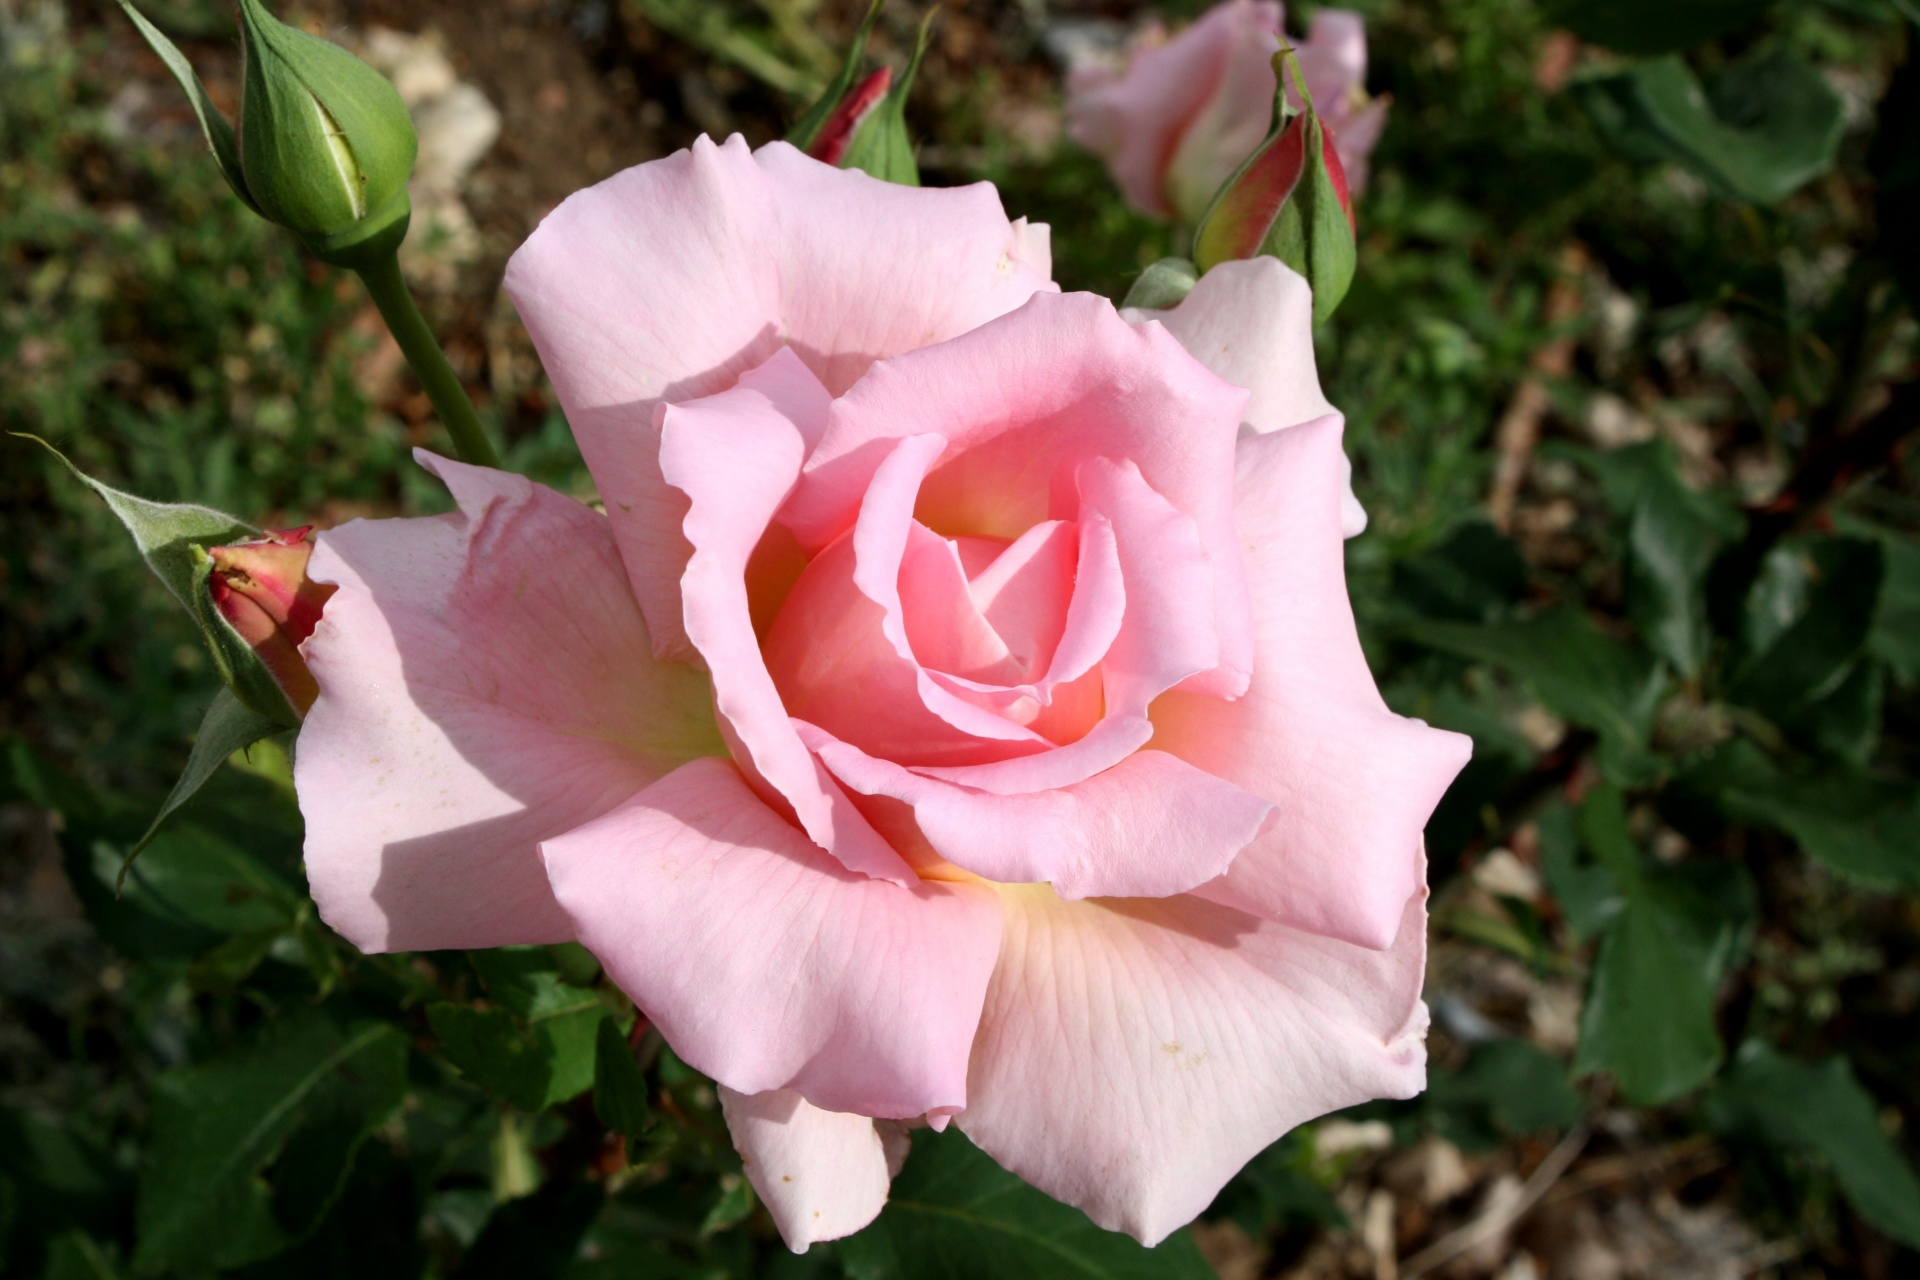 Belle Rose del color de rosa claro